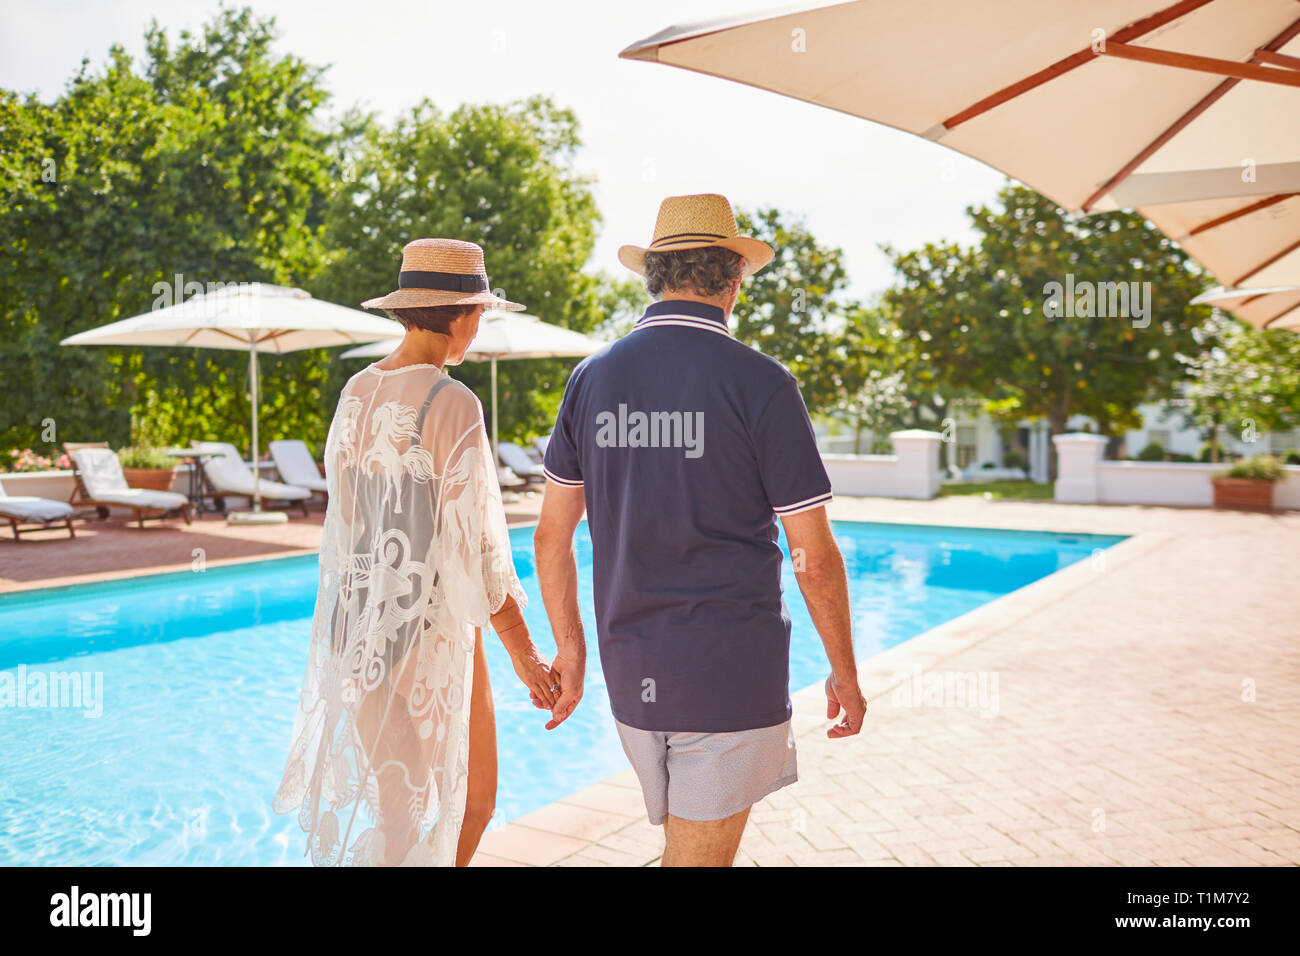 Pareja tomados de las manos, caminando junto a soleado complejo turístico piscina Foto de stock